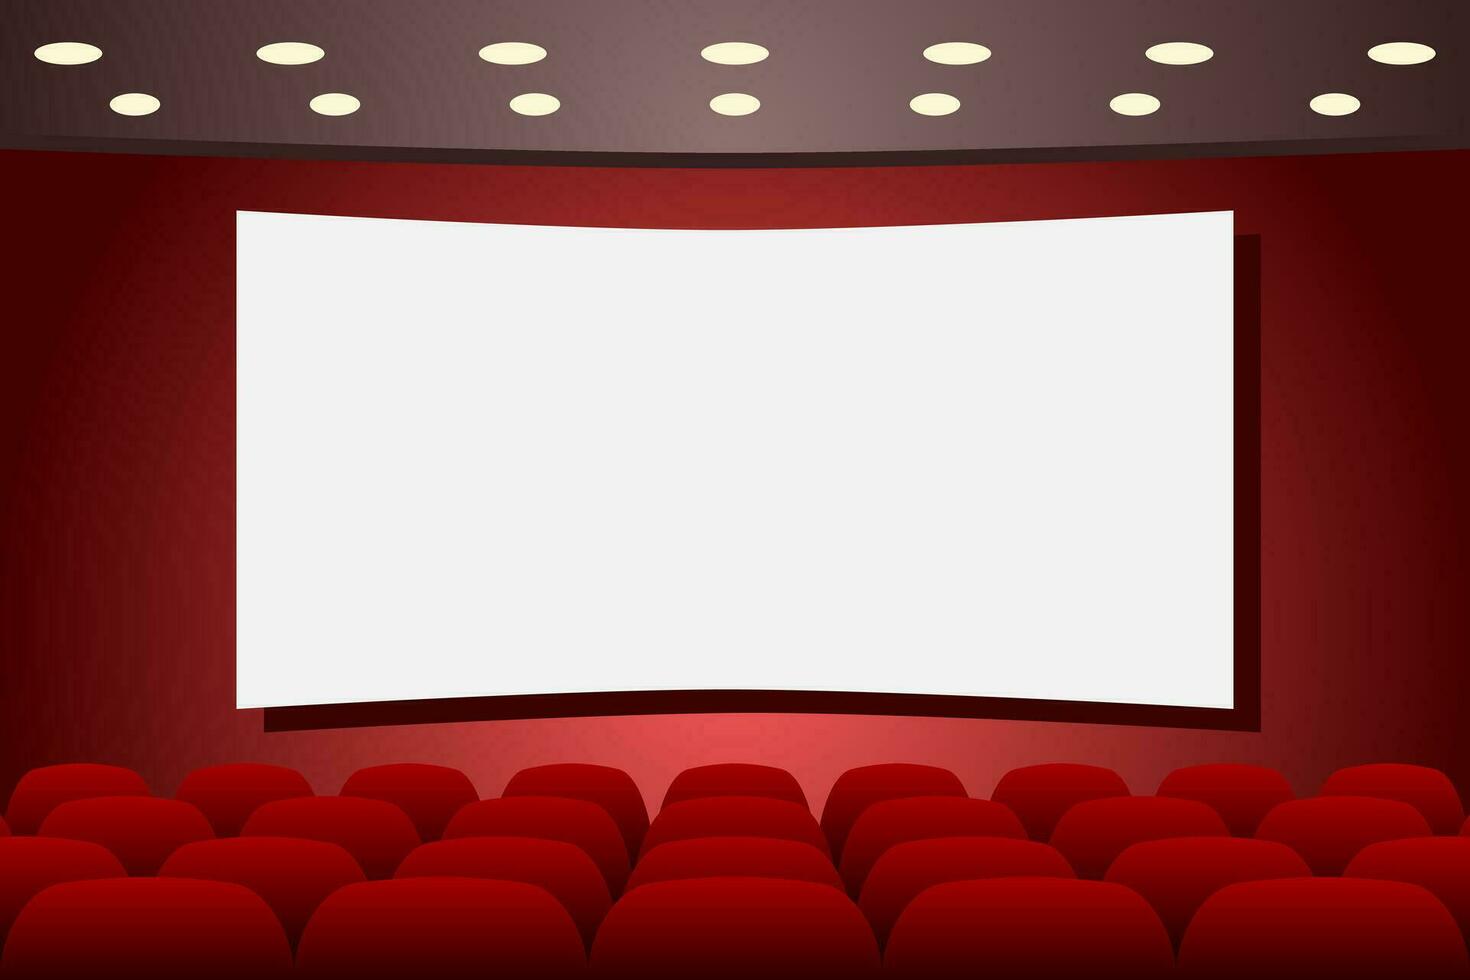 Teatro palcoscenico con vuoto posti a sedere righe e vuoto schermo. Teatro interno. copia spazio. vettore illustrazione.